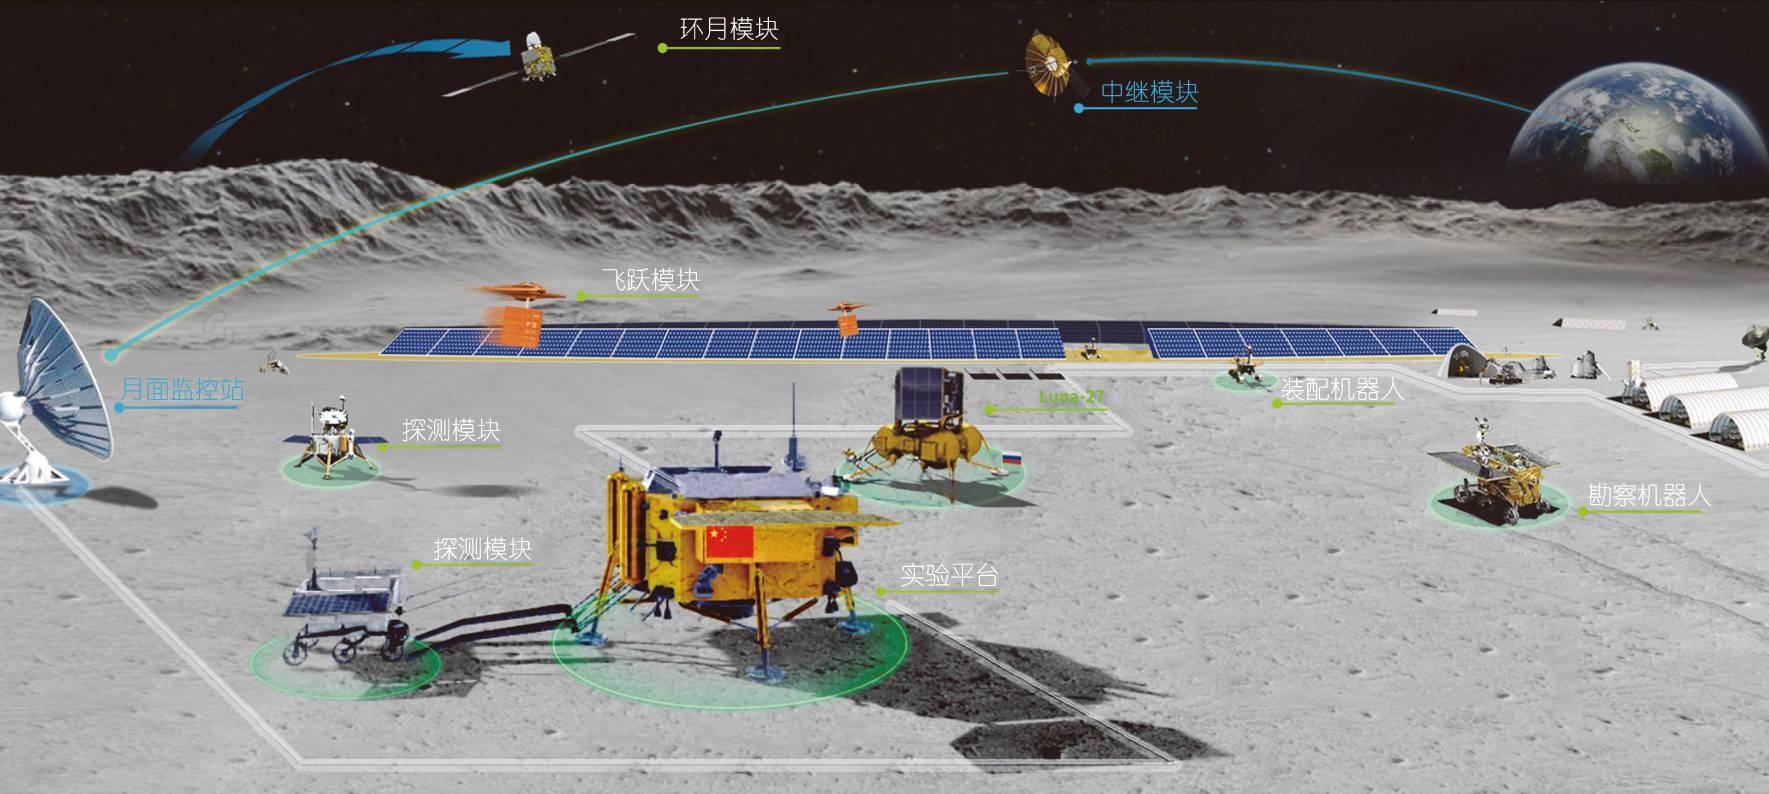 中国月球基地:月球房建在火山区,难道不怕危险?